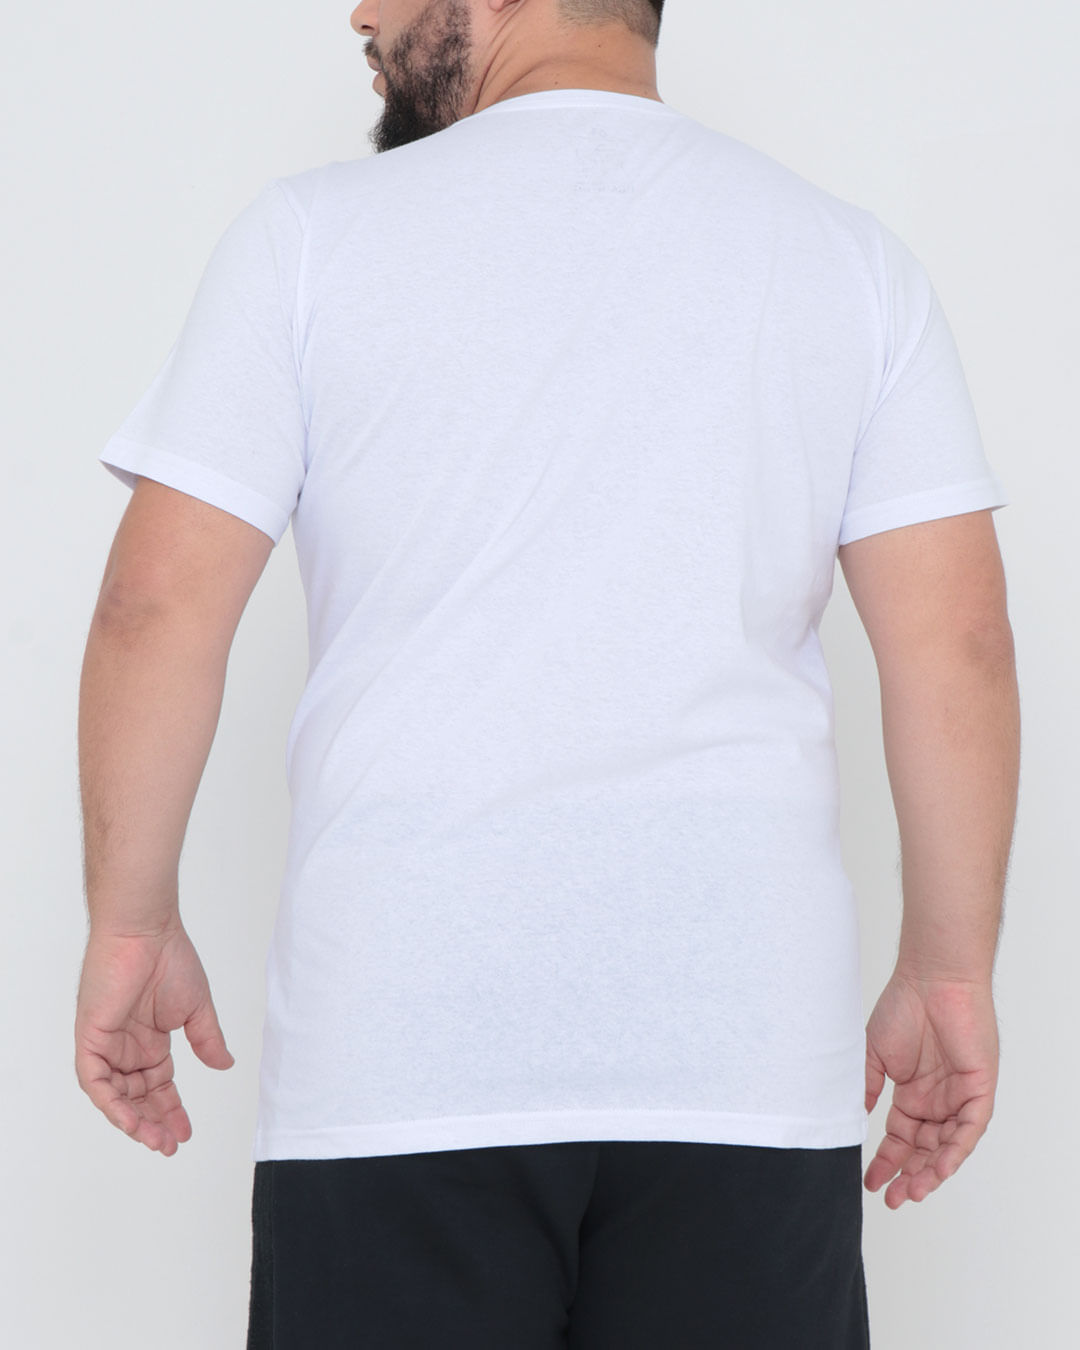 Camiseta-Tt0021-Barber-Shop-G1g4---Branco